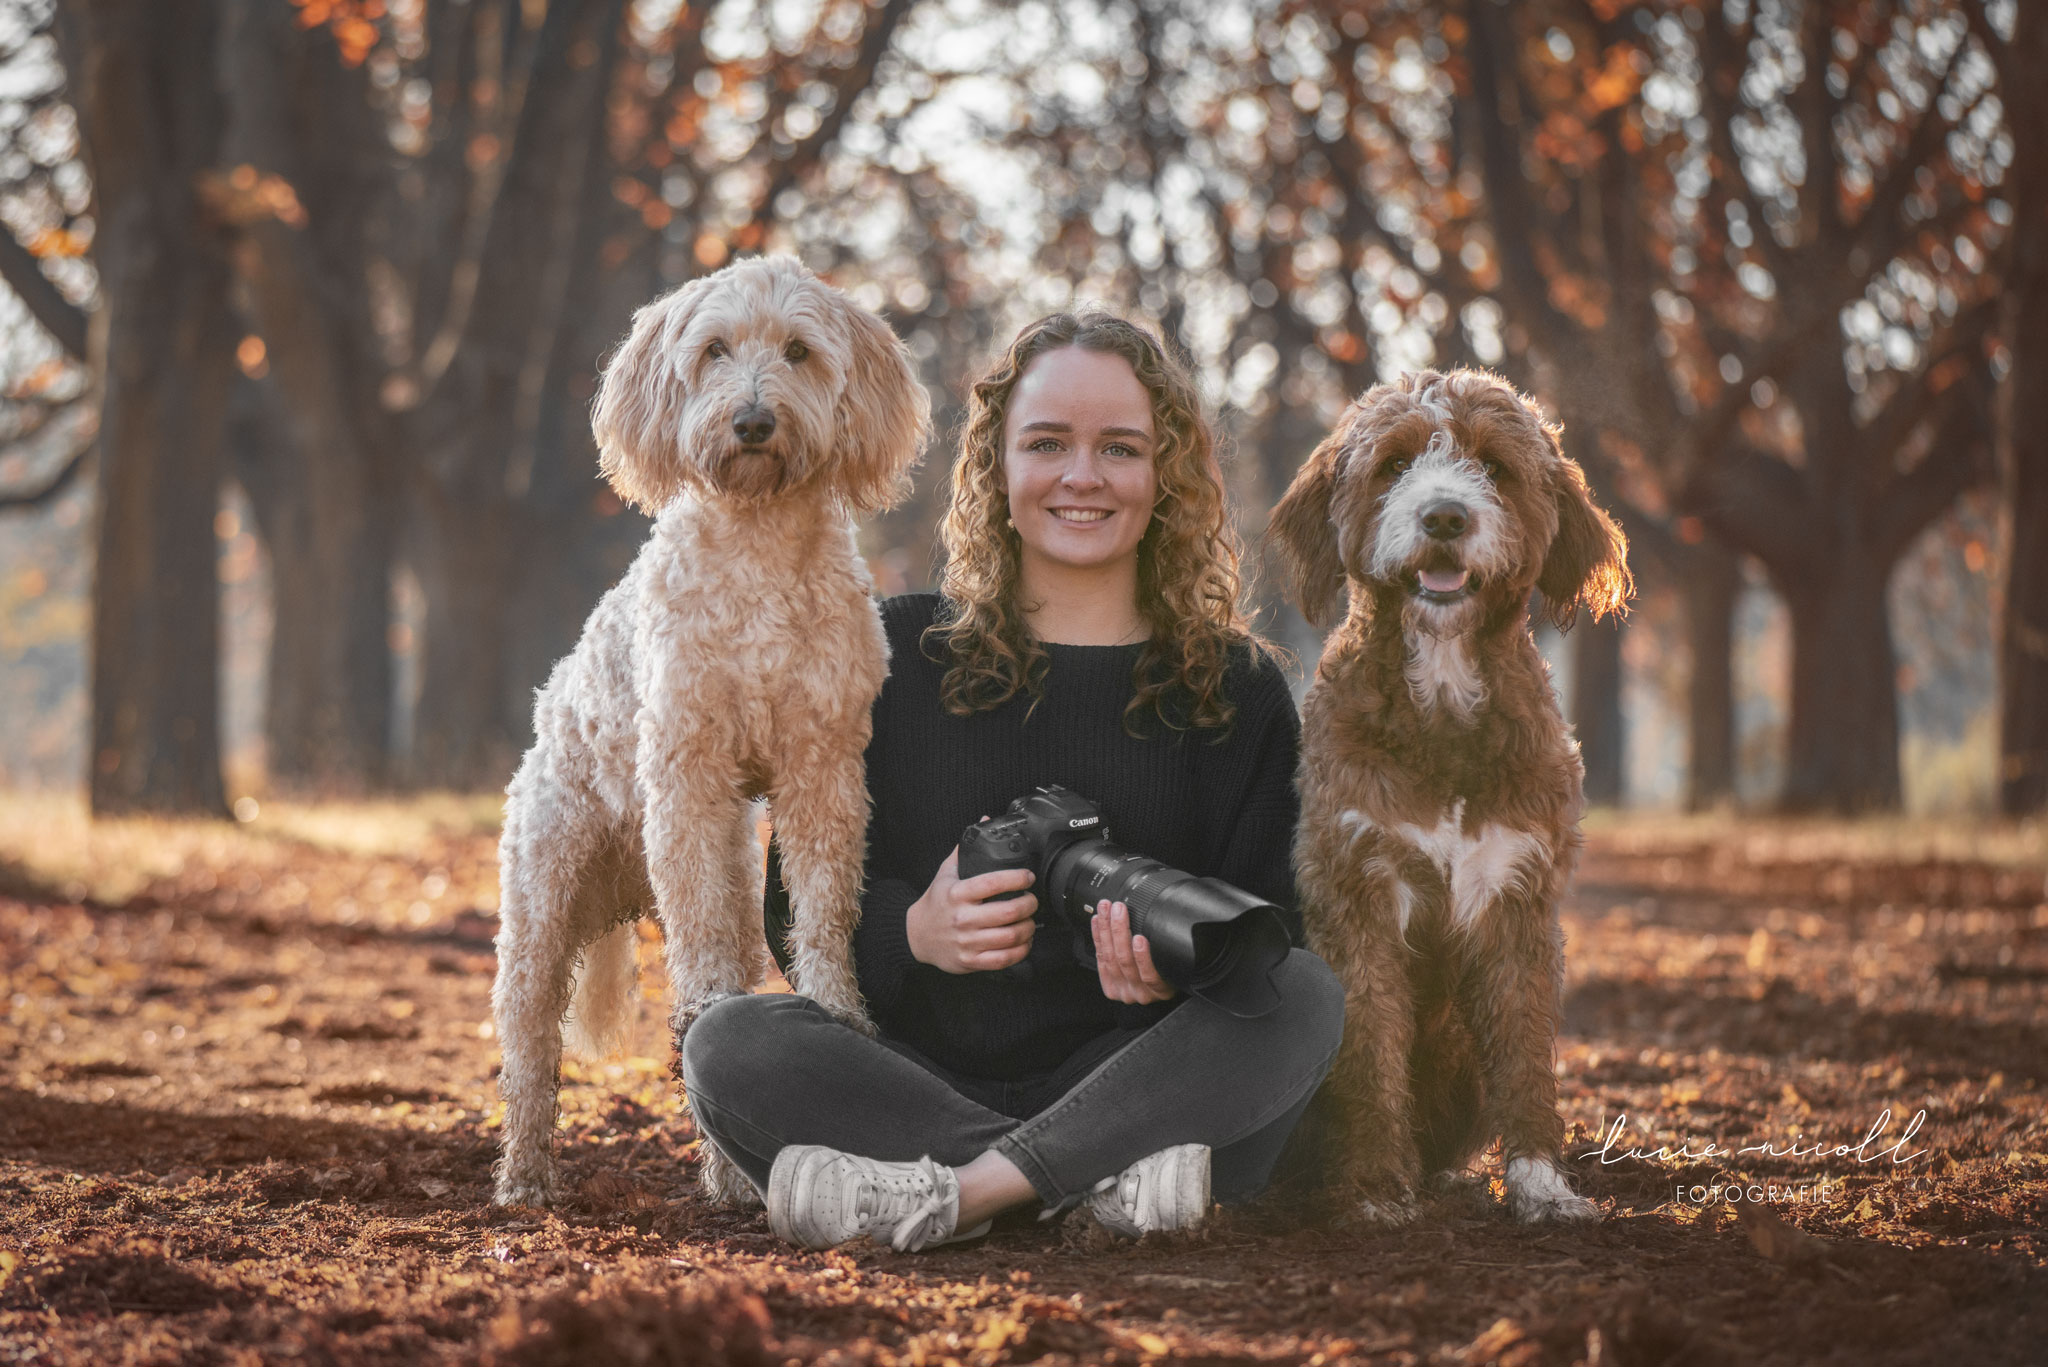 Fotografie von einem Mädchen mit ihrer Kamera und zwei Hunden